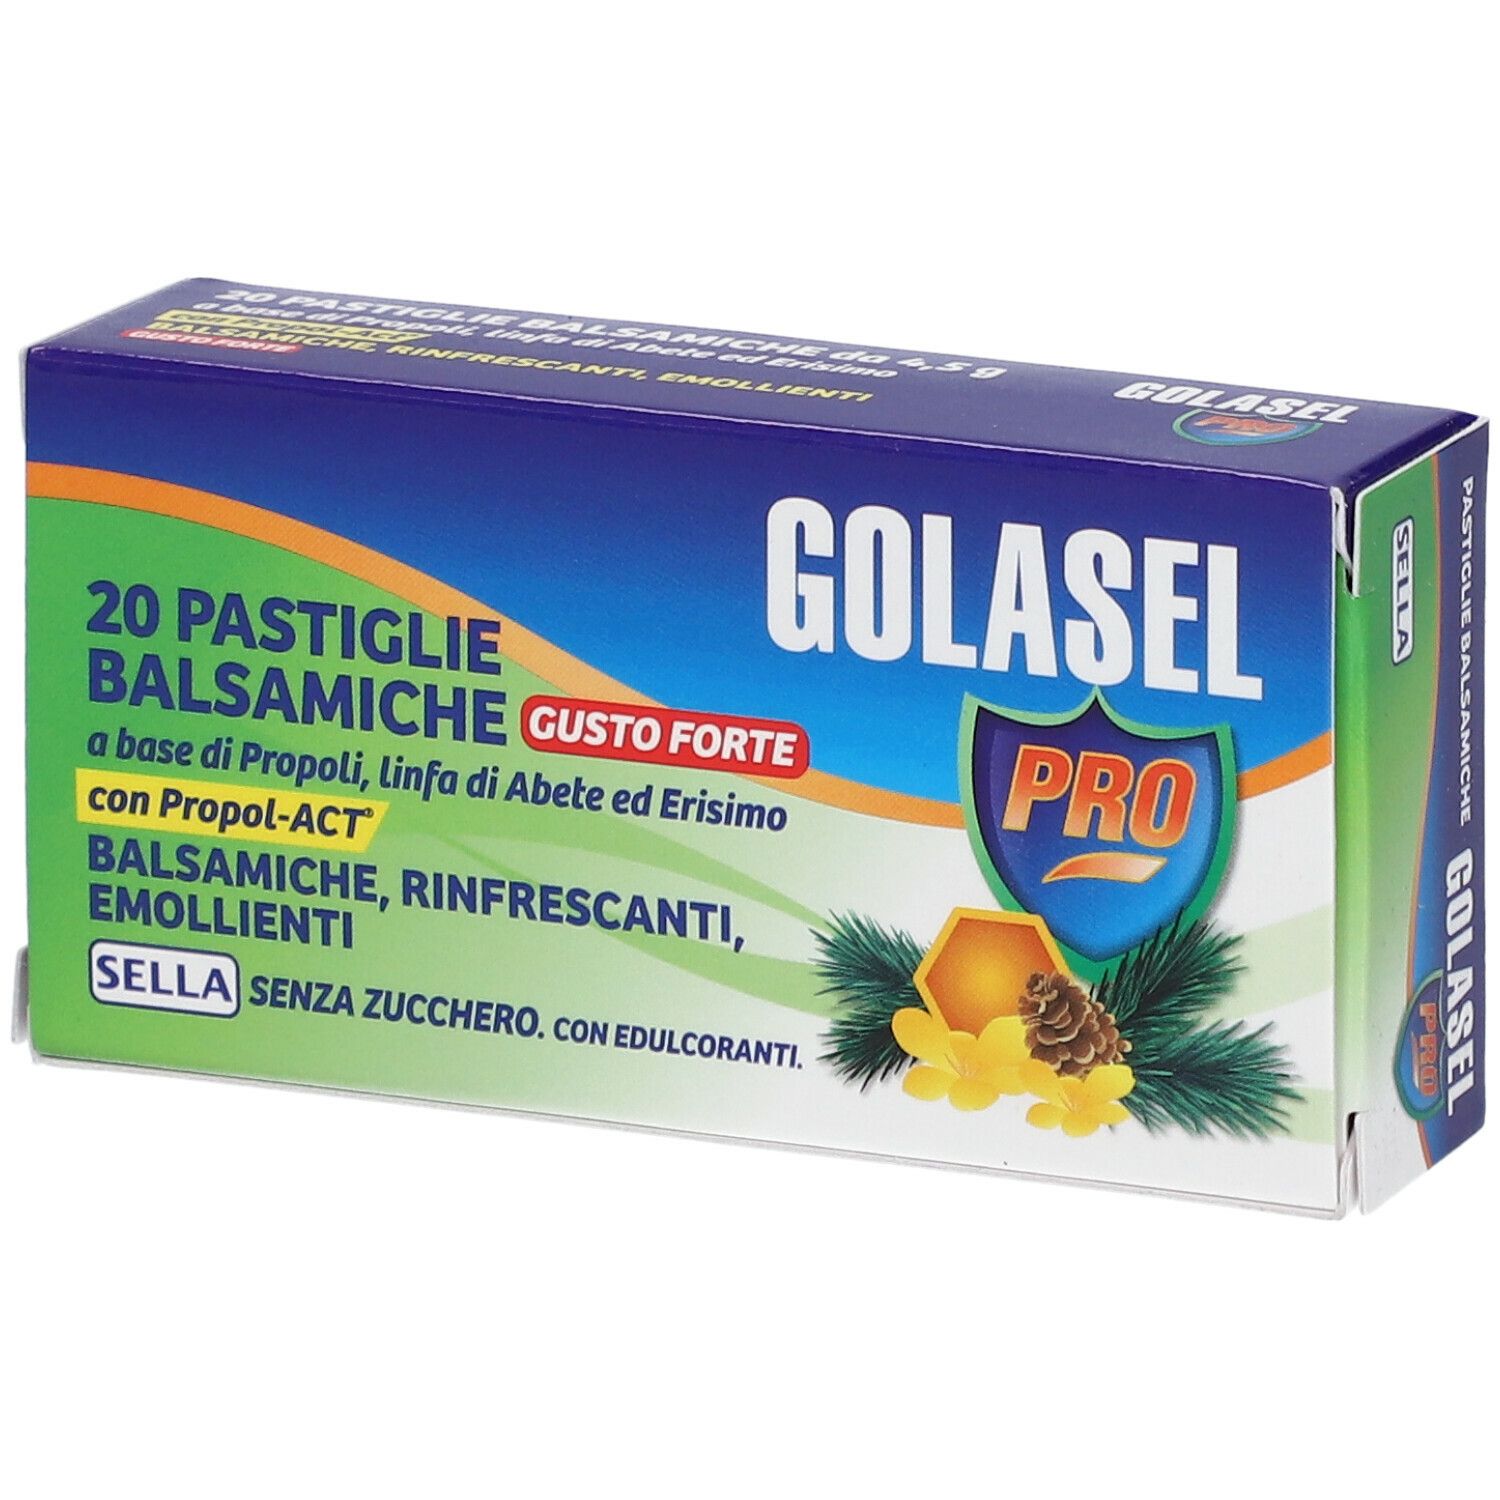 Image of Golasel Pro Pastiglie Balsamiche Gusto Forte Sella 20 Pastiglie